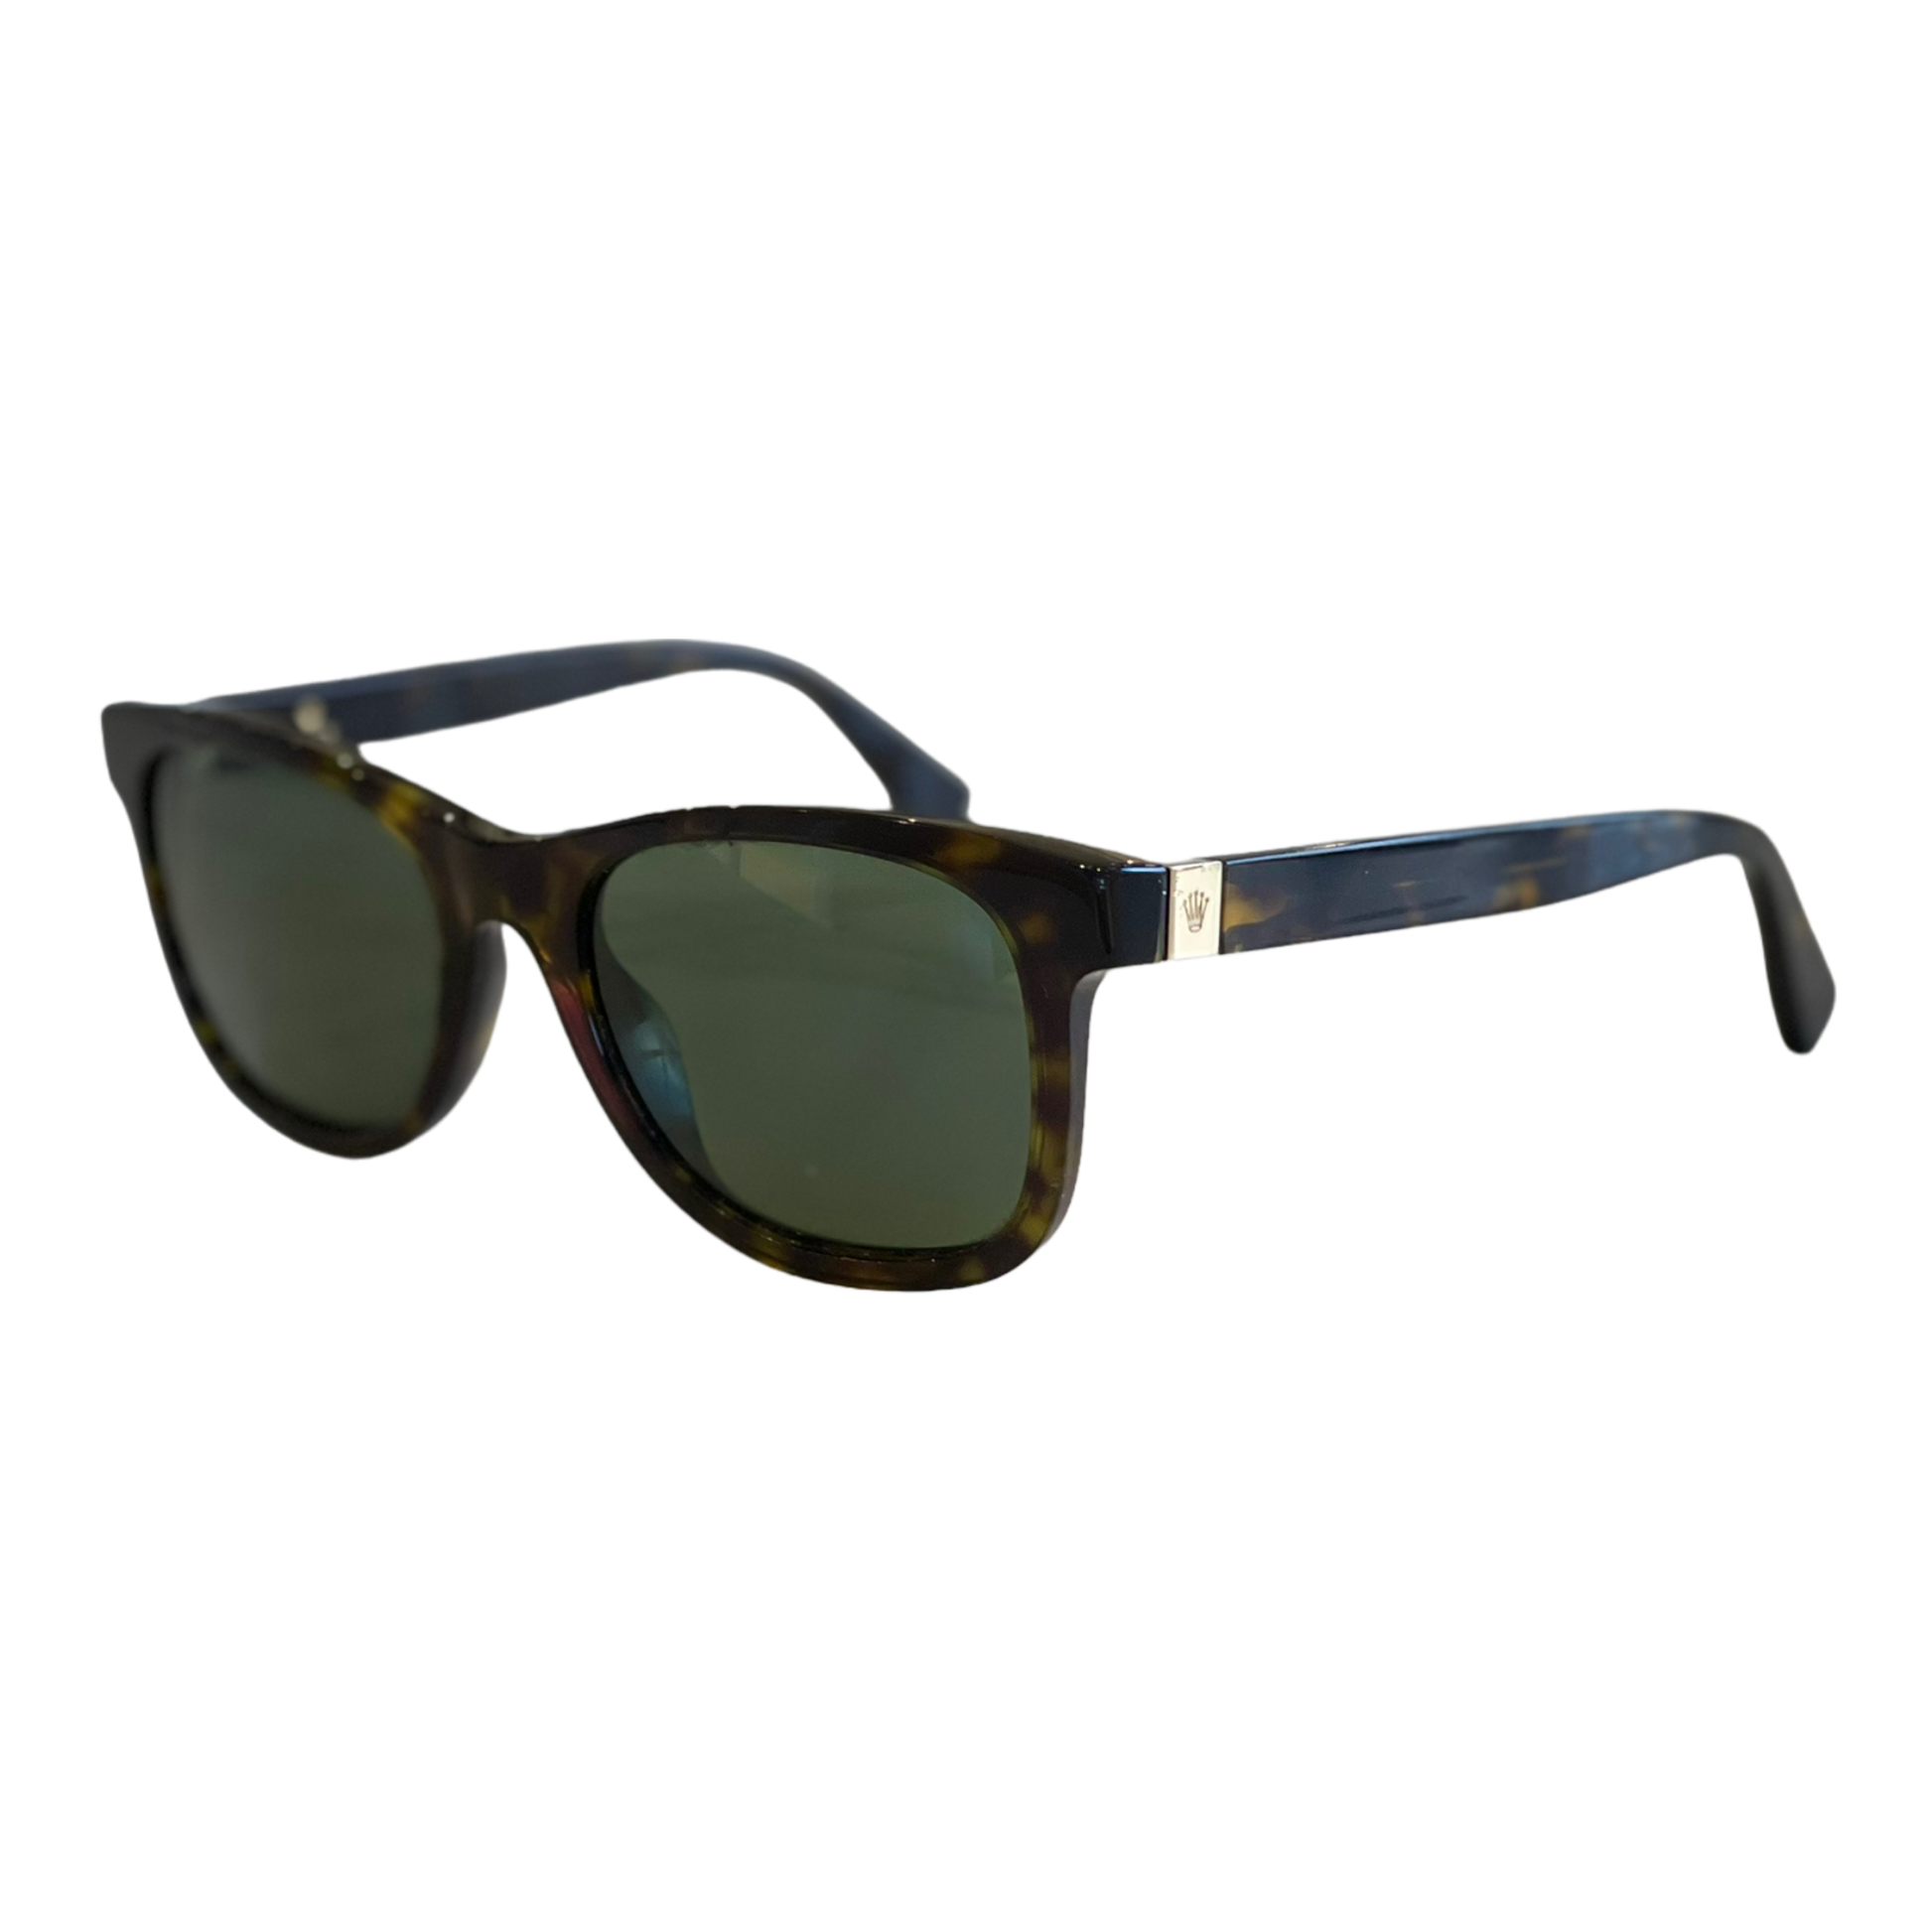 Pre Rolex Sunglasses For Men – Refined Luxury